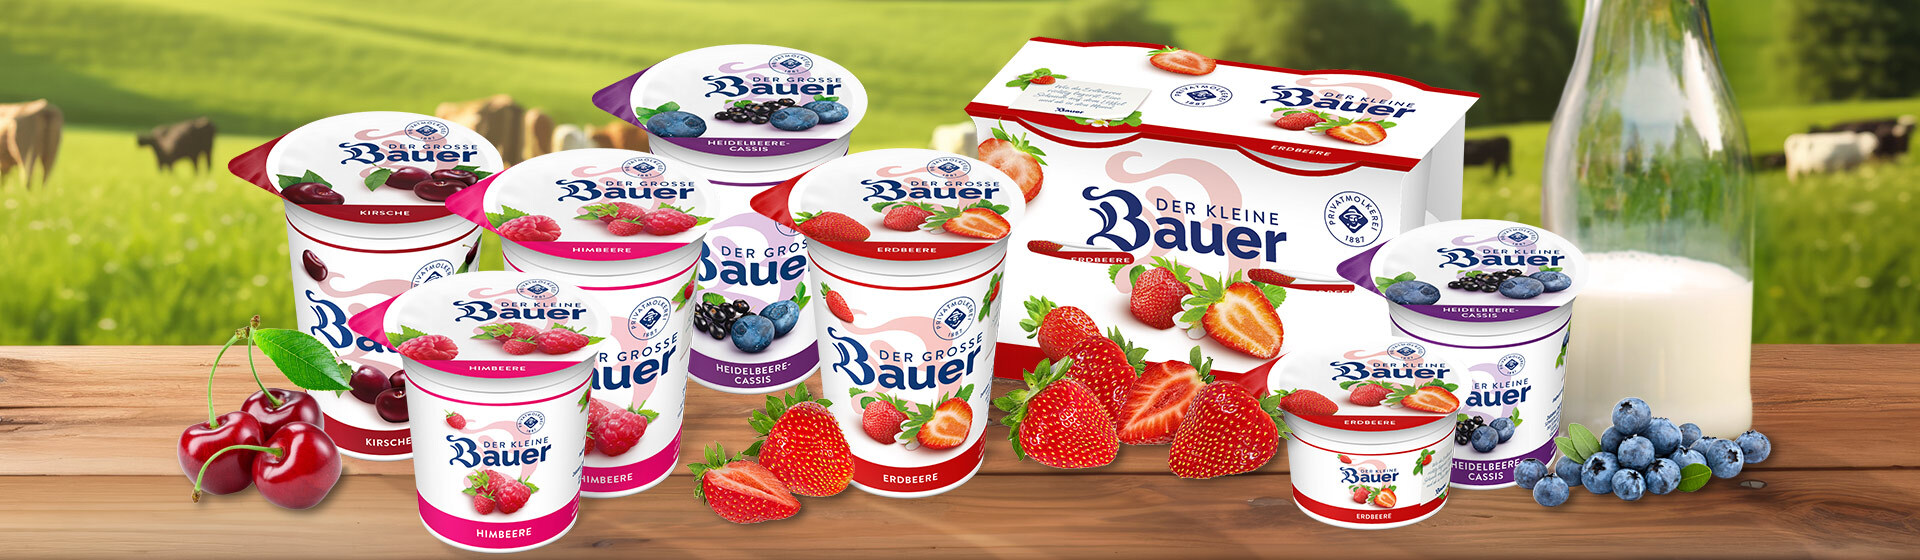 bauer natur joghurt trinkjoghurt header produkte